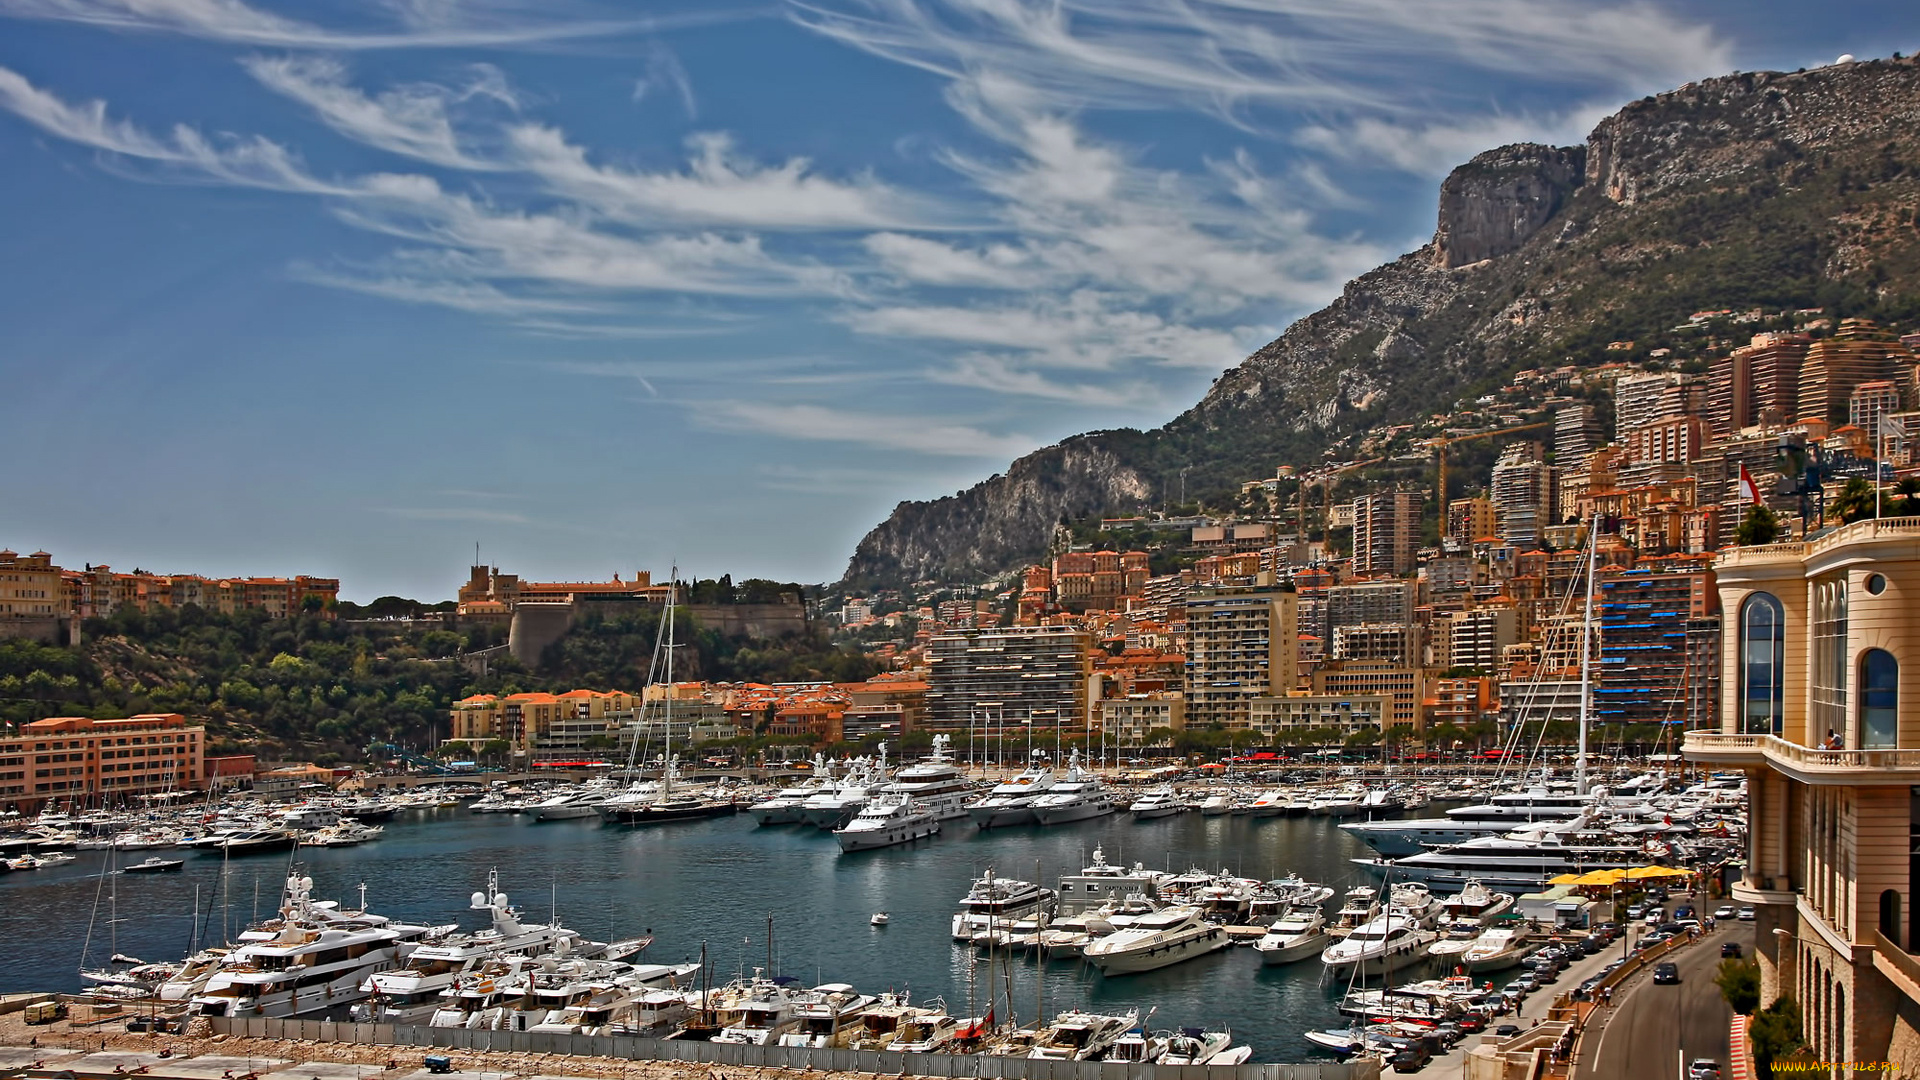 города, монте-карло, , монако, лодки, яхты, горы, дома, монте-карло, гавань, небо